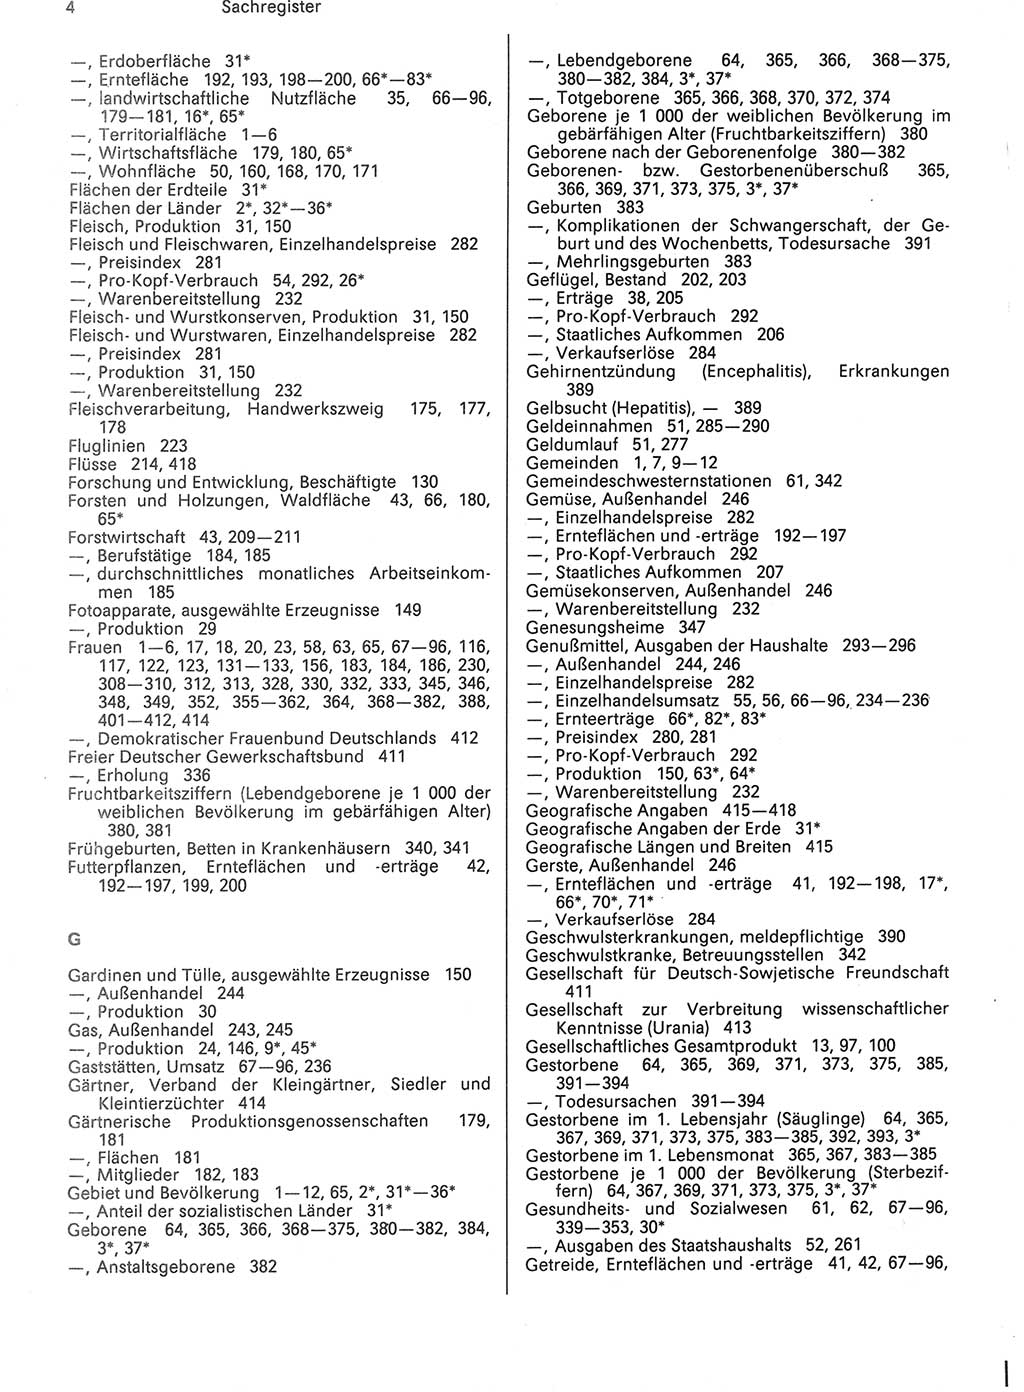 Statistisches Jahrbuch der Deutschen Demokratischen Republik (DDR) 1988, Seite 4 (Stat. Jb. DDR 1988, S. 4)